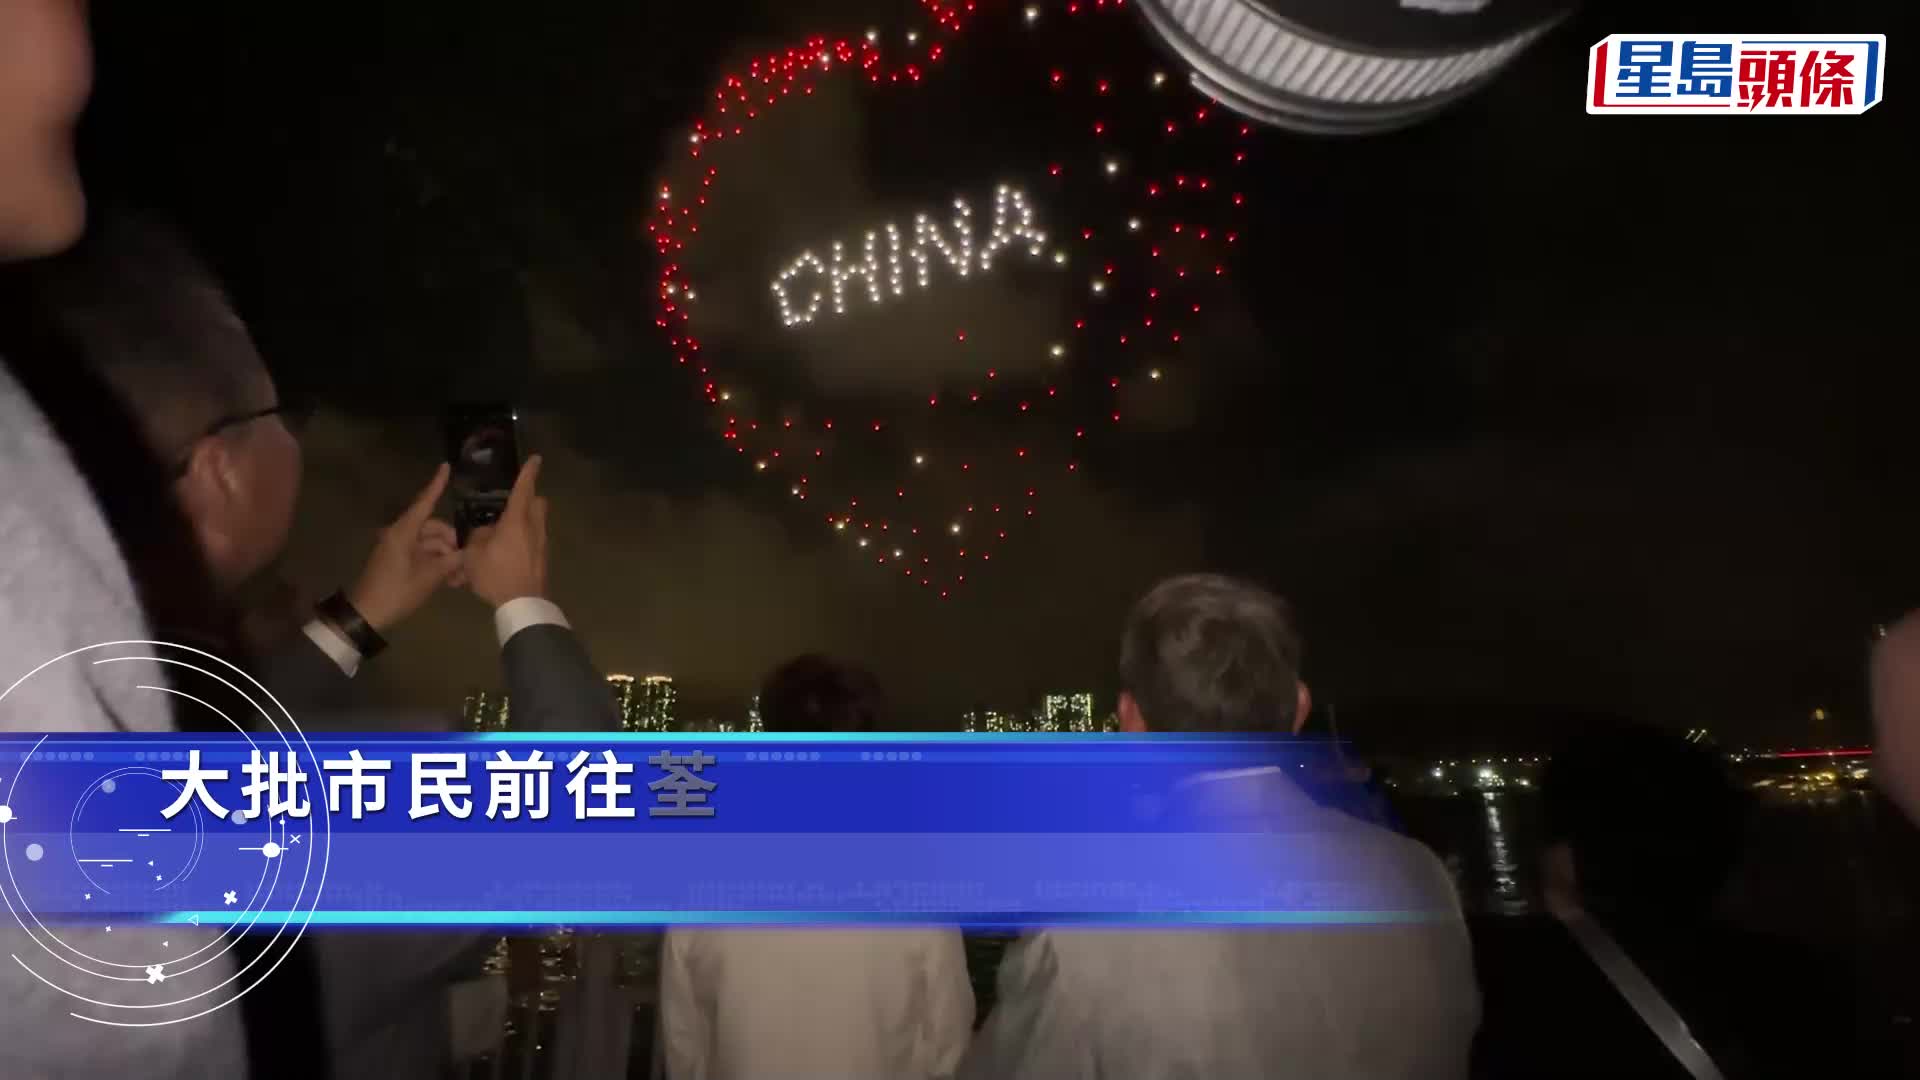 七一︱荃灣區無人機表演慶回歸  展示「香港夢、中國心」字樣、金紫荊熊貓海豚圖案